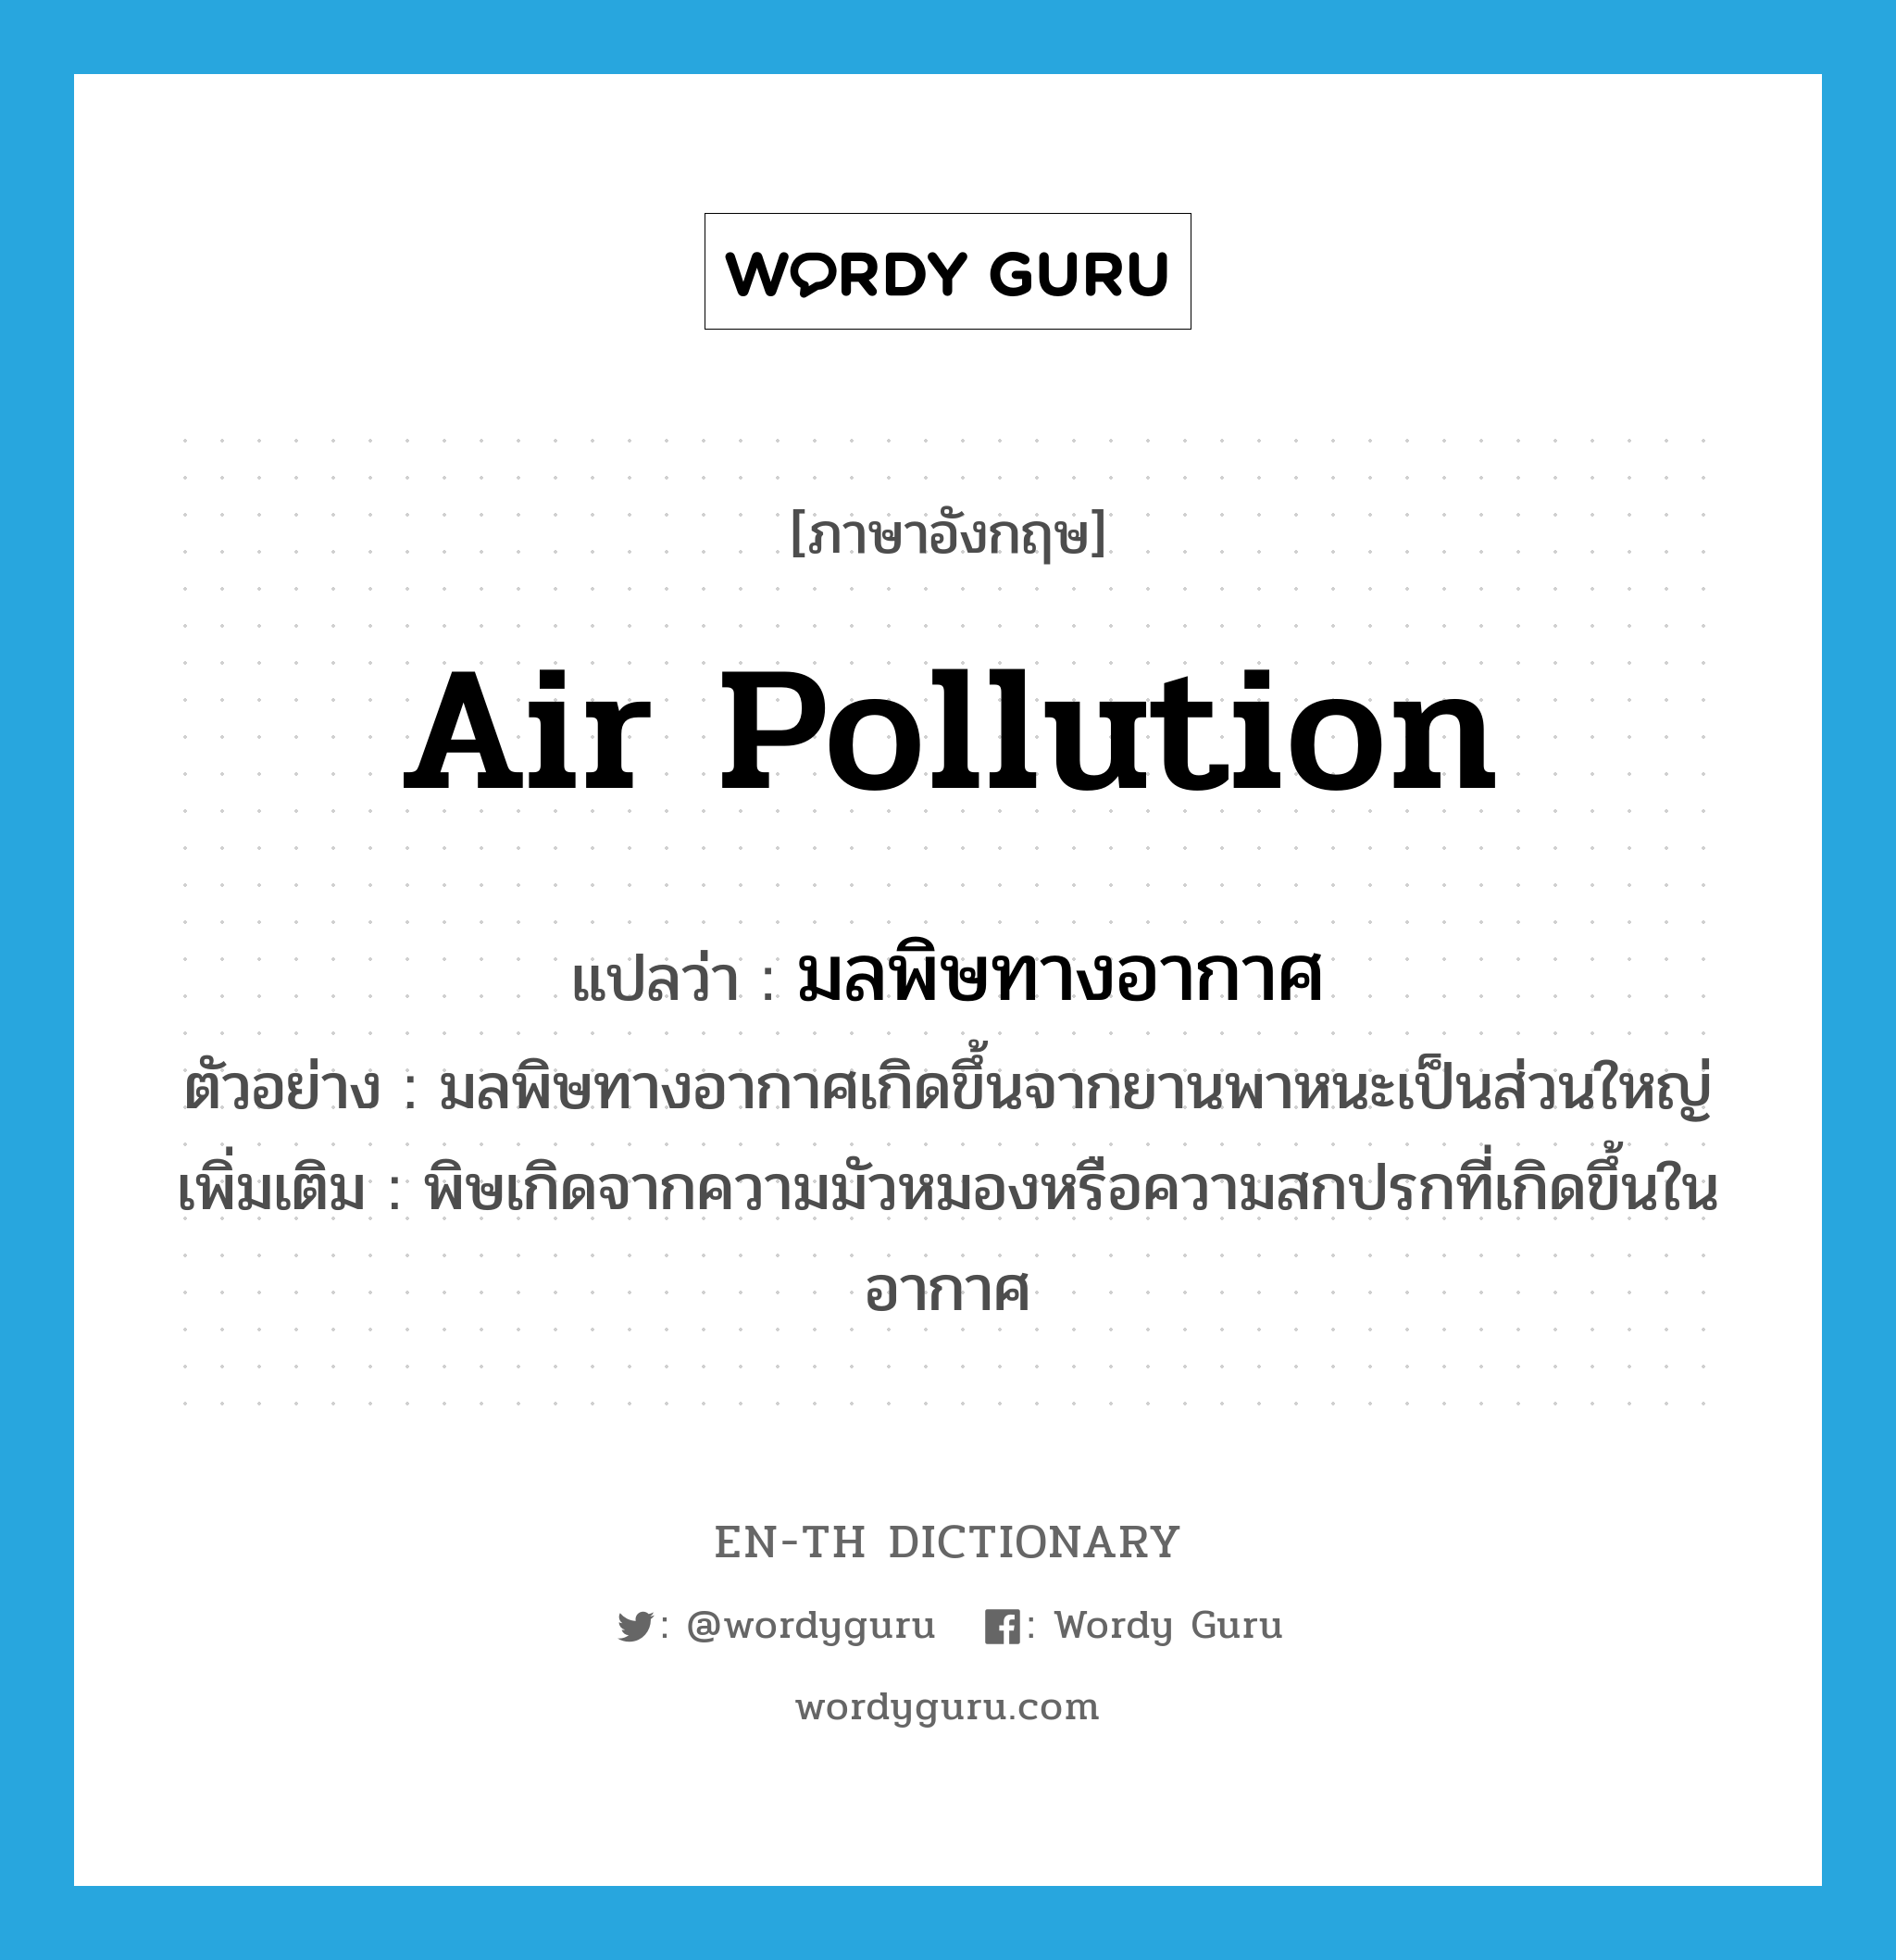 air pollution แปลว่า?, คำศัพท์ภาษาอังกฤษ air pollution แปลว่า มลพิษทางอากาศ ประเภท N ตัวอย่าง มลพิษทางอากาศเกิดขึ้นจากยานพาหนะเป็นส่วนใหญ่ เพิ่มเติม พิษเกิดจากความมัวหมองหรือความสกปรกที่เกิดขึ้นในอากาศ หมวด N